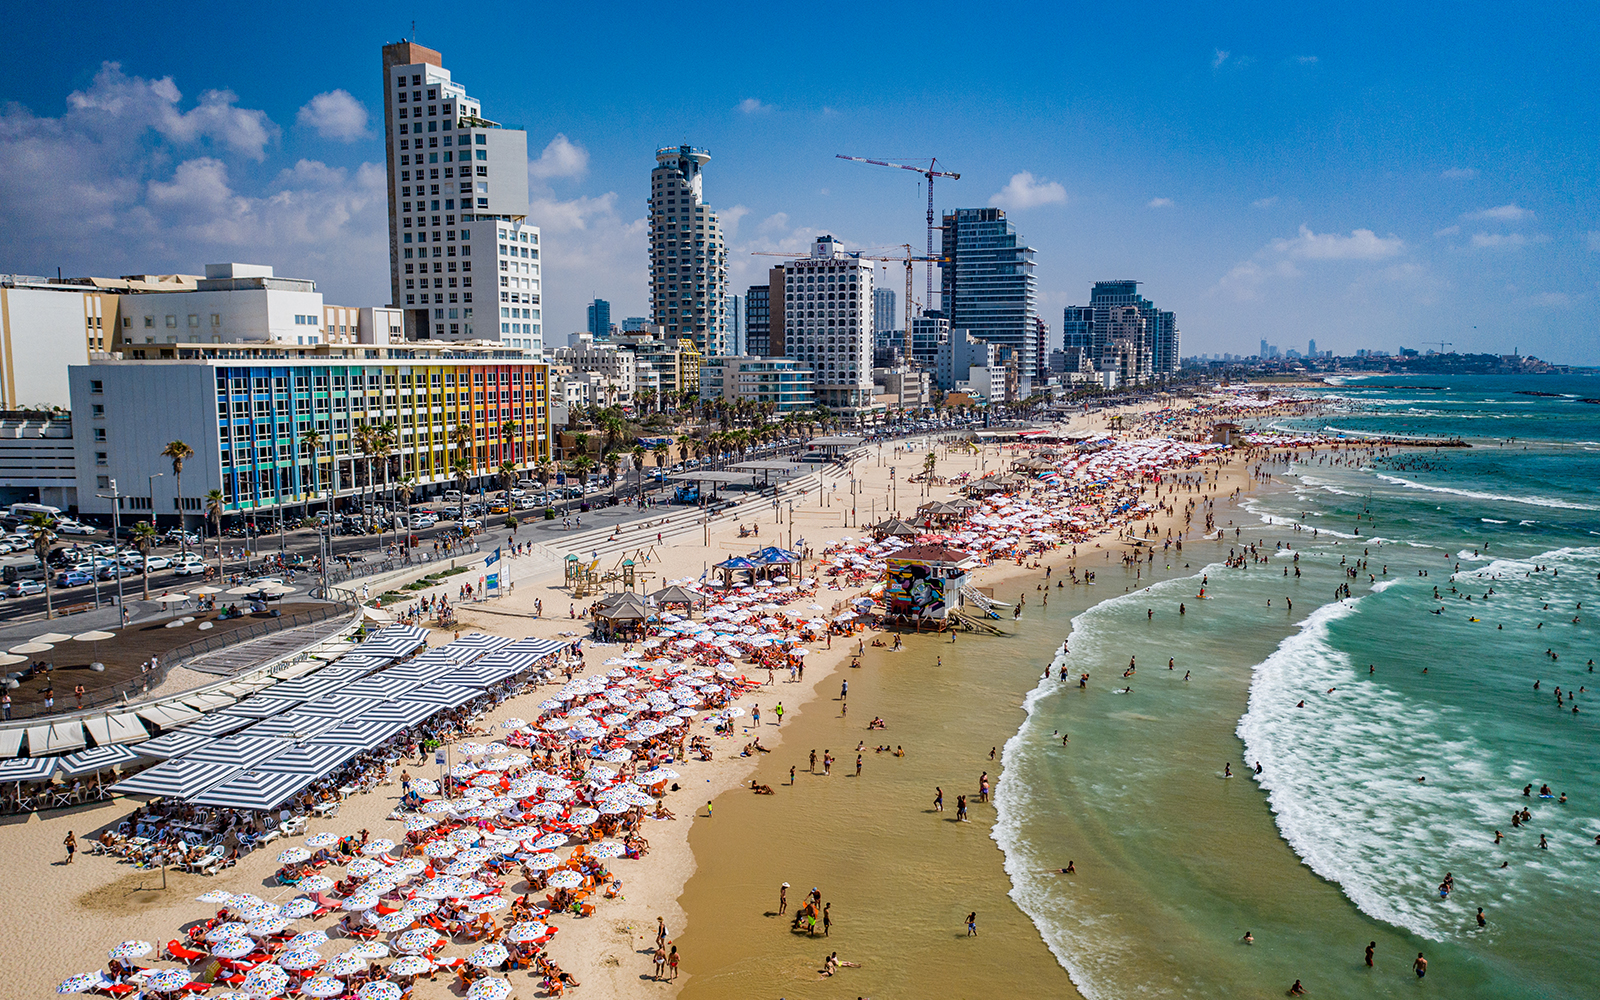 Mji mkuu wa Israel,Tel Aviv umetajwa kuwa mji ghali zaidi kwa mtu yeyote kuishi